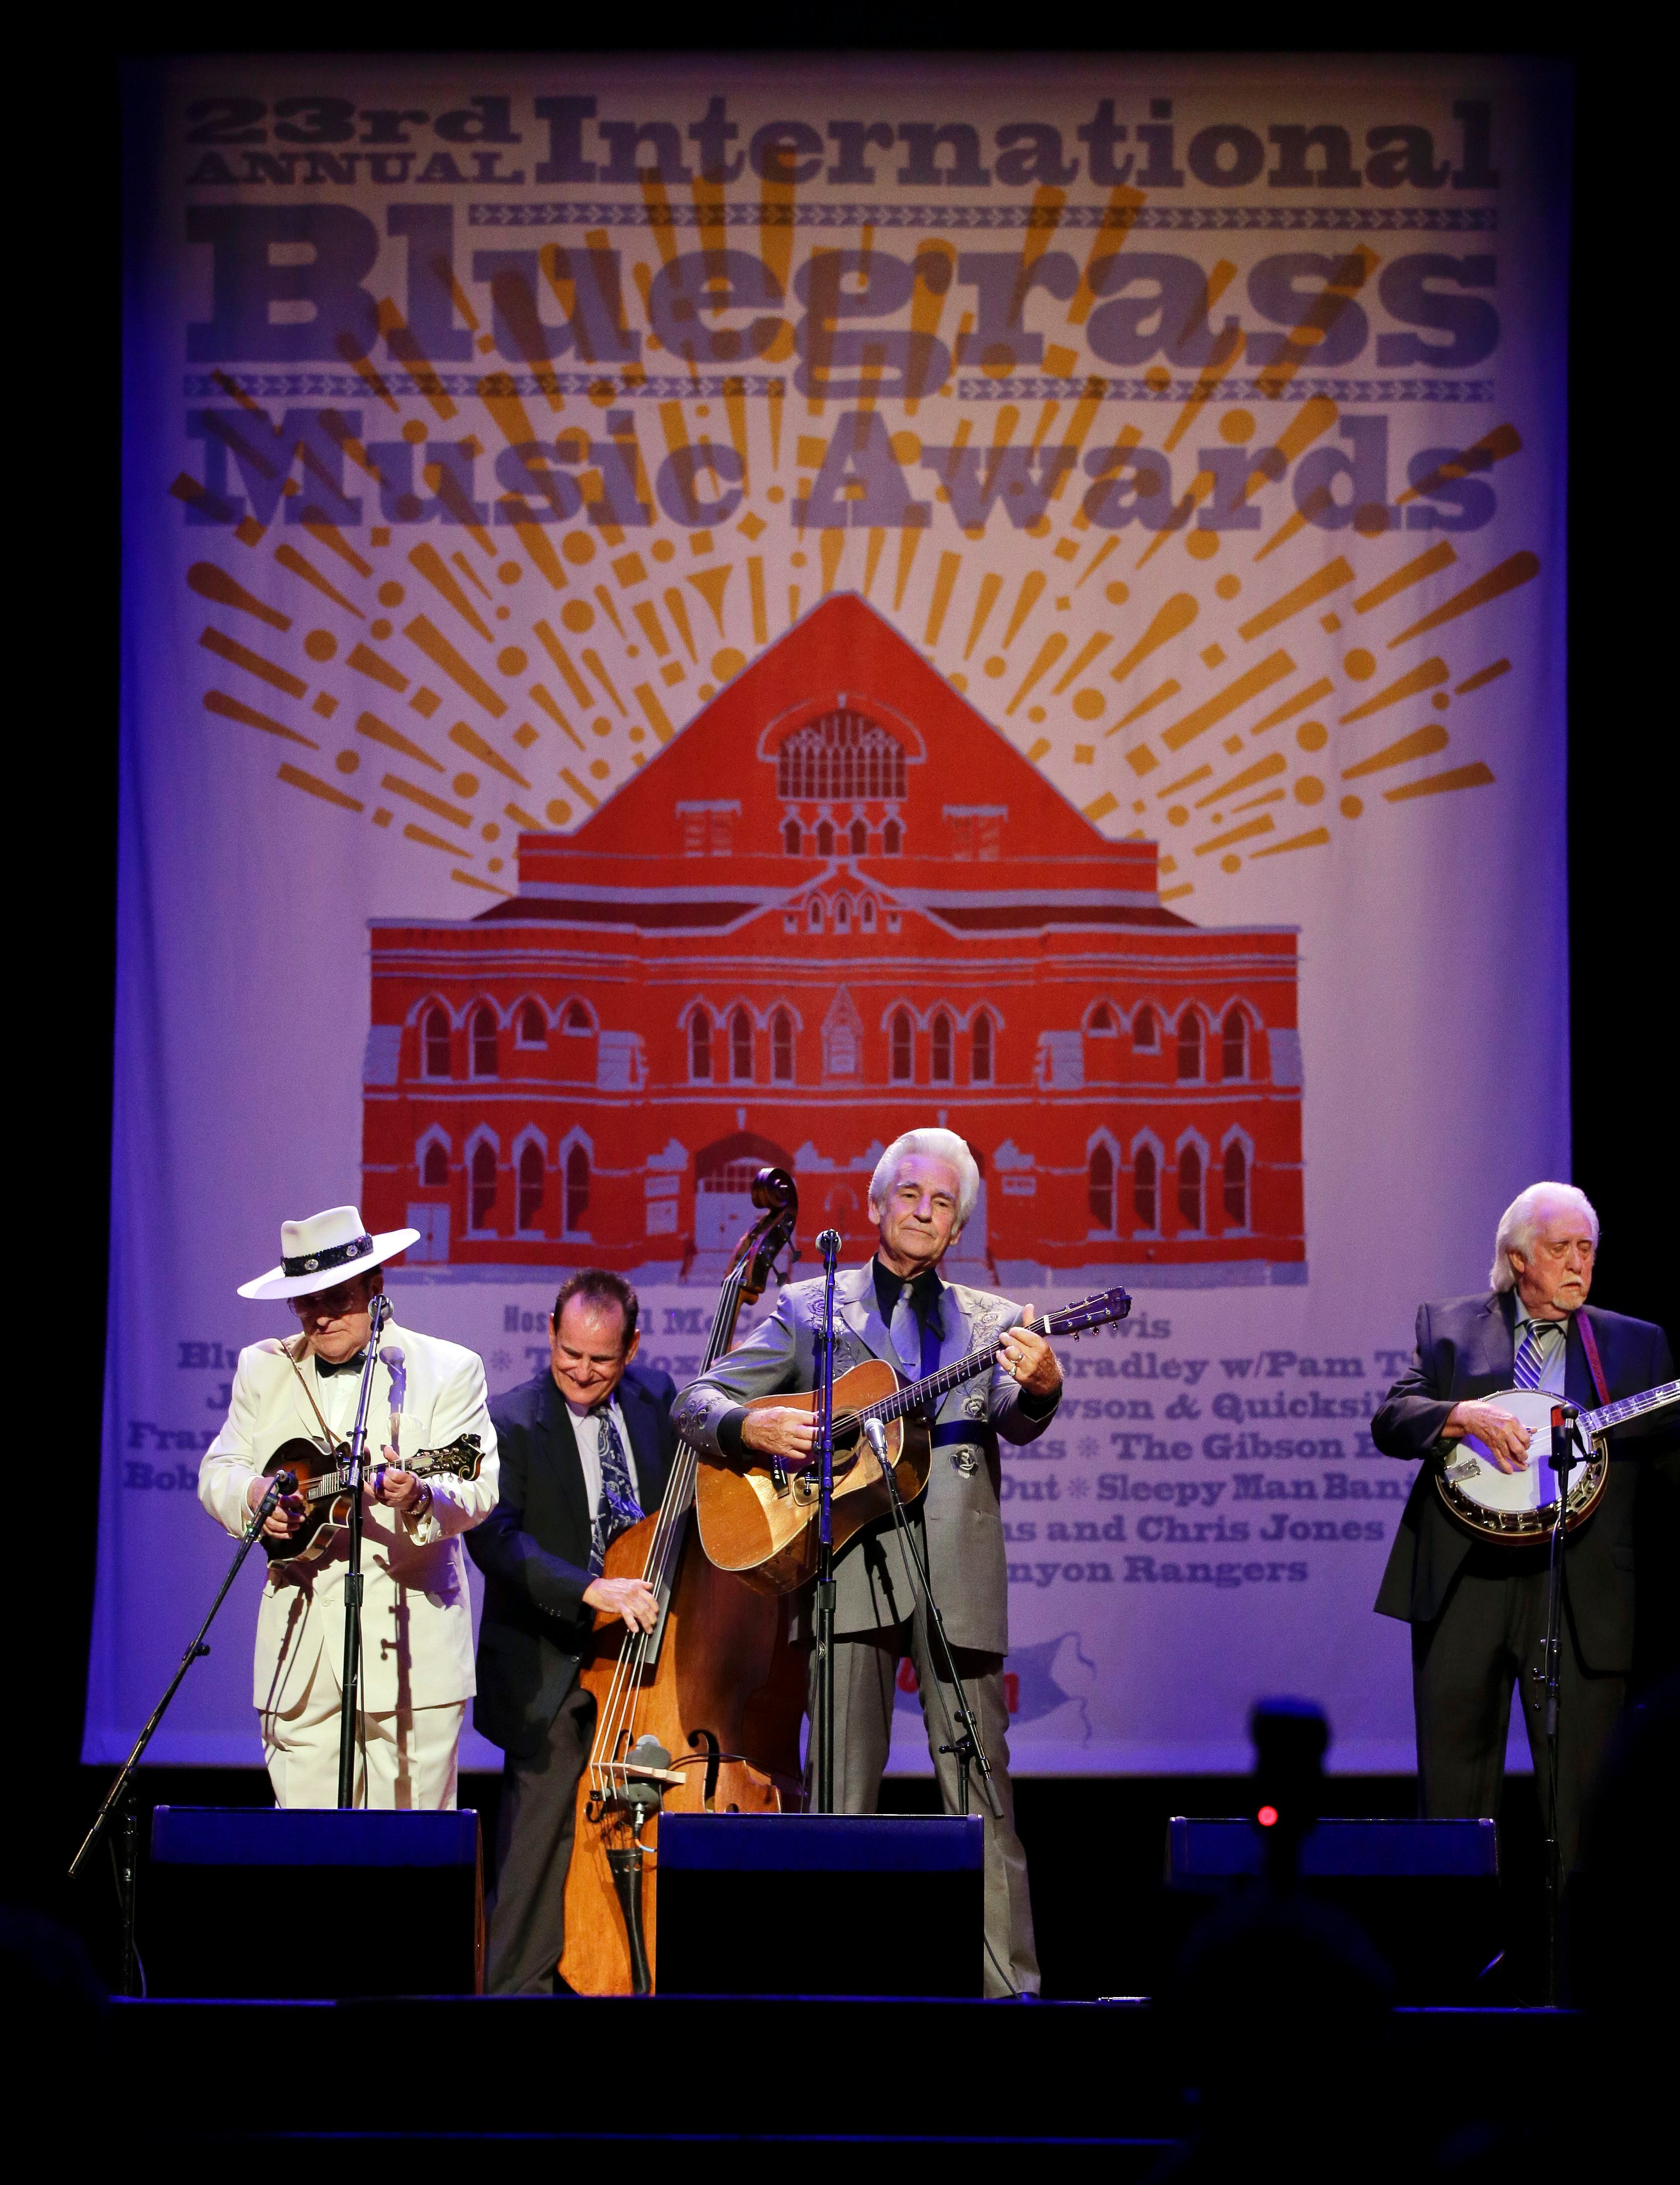 Influential Bluegrass musician J.D. Crowe has died